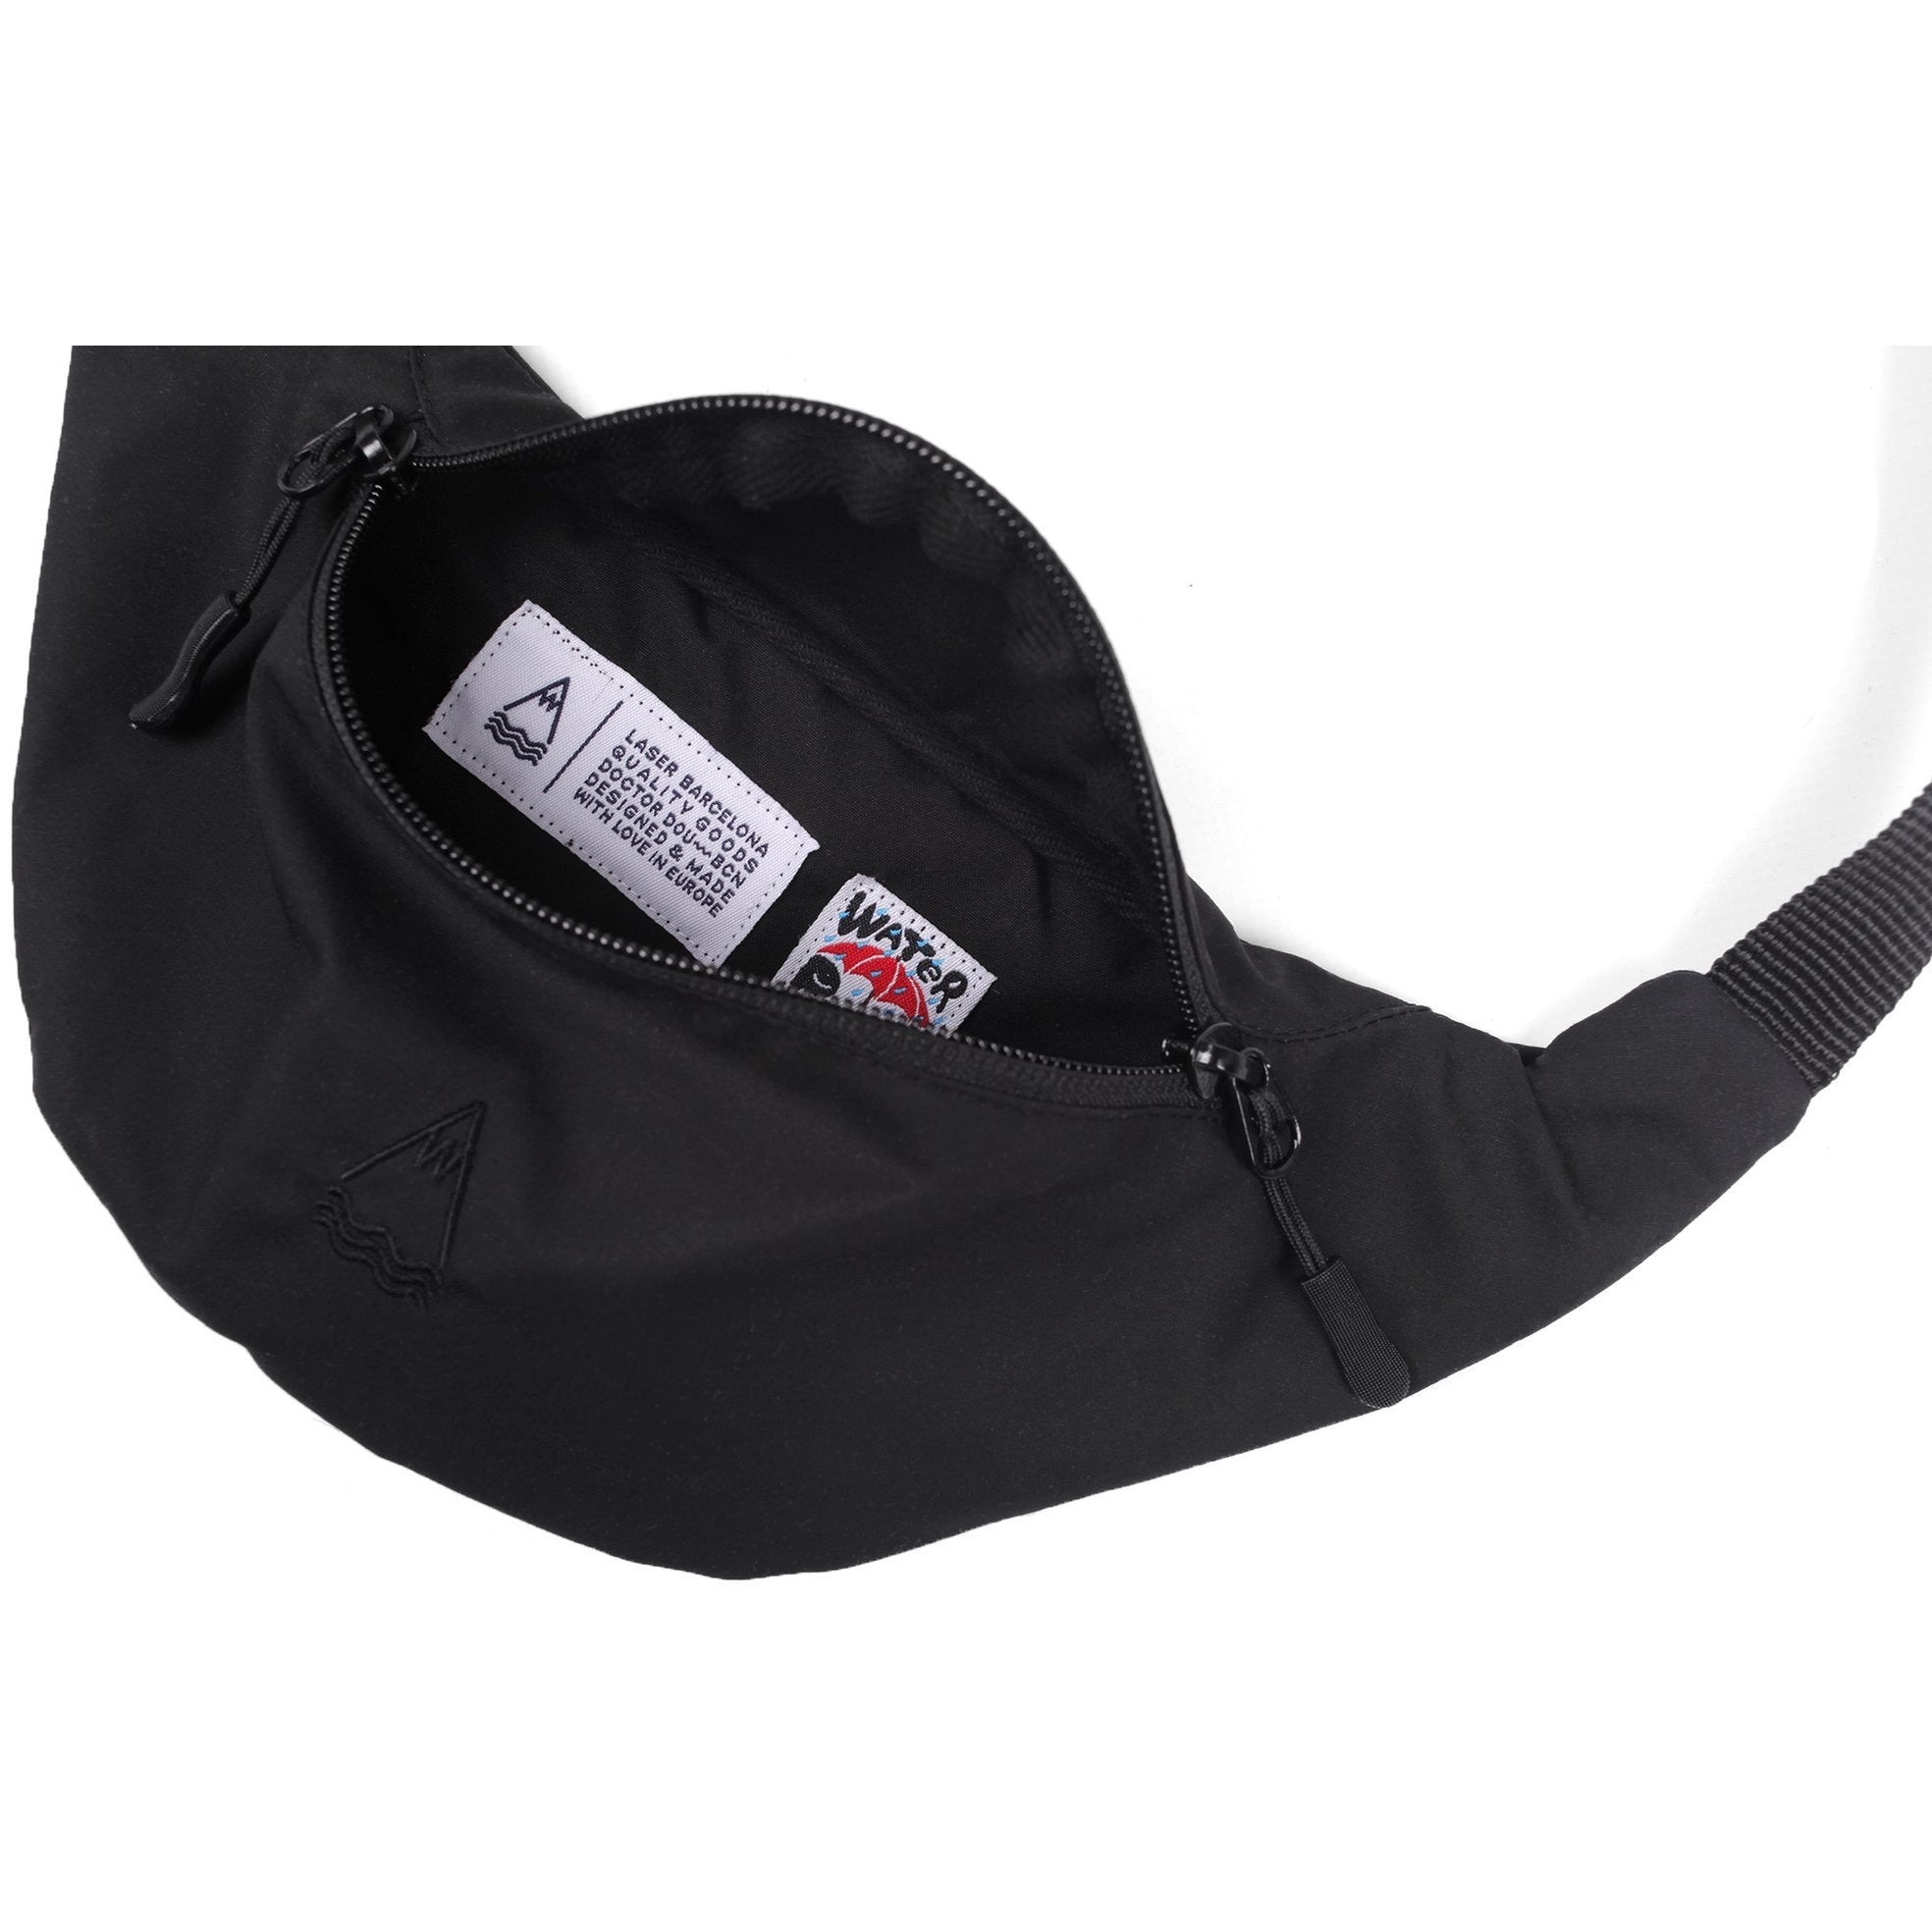 Black Llacuna belt bag